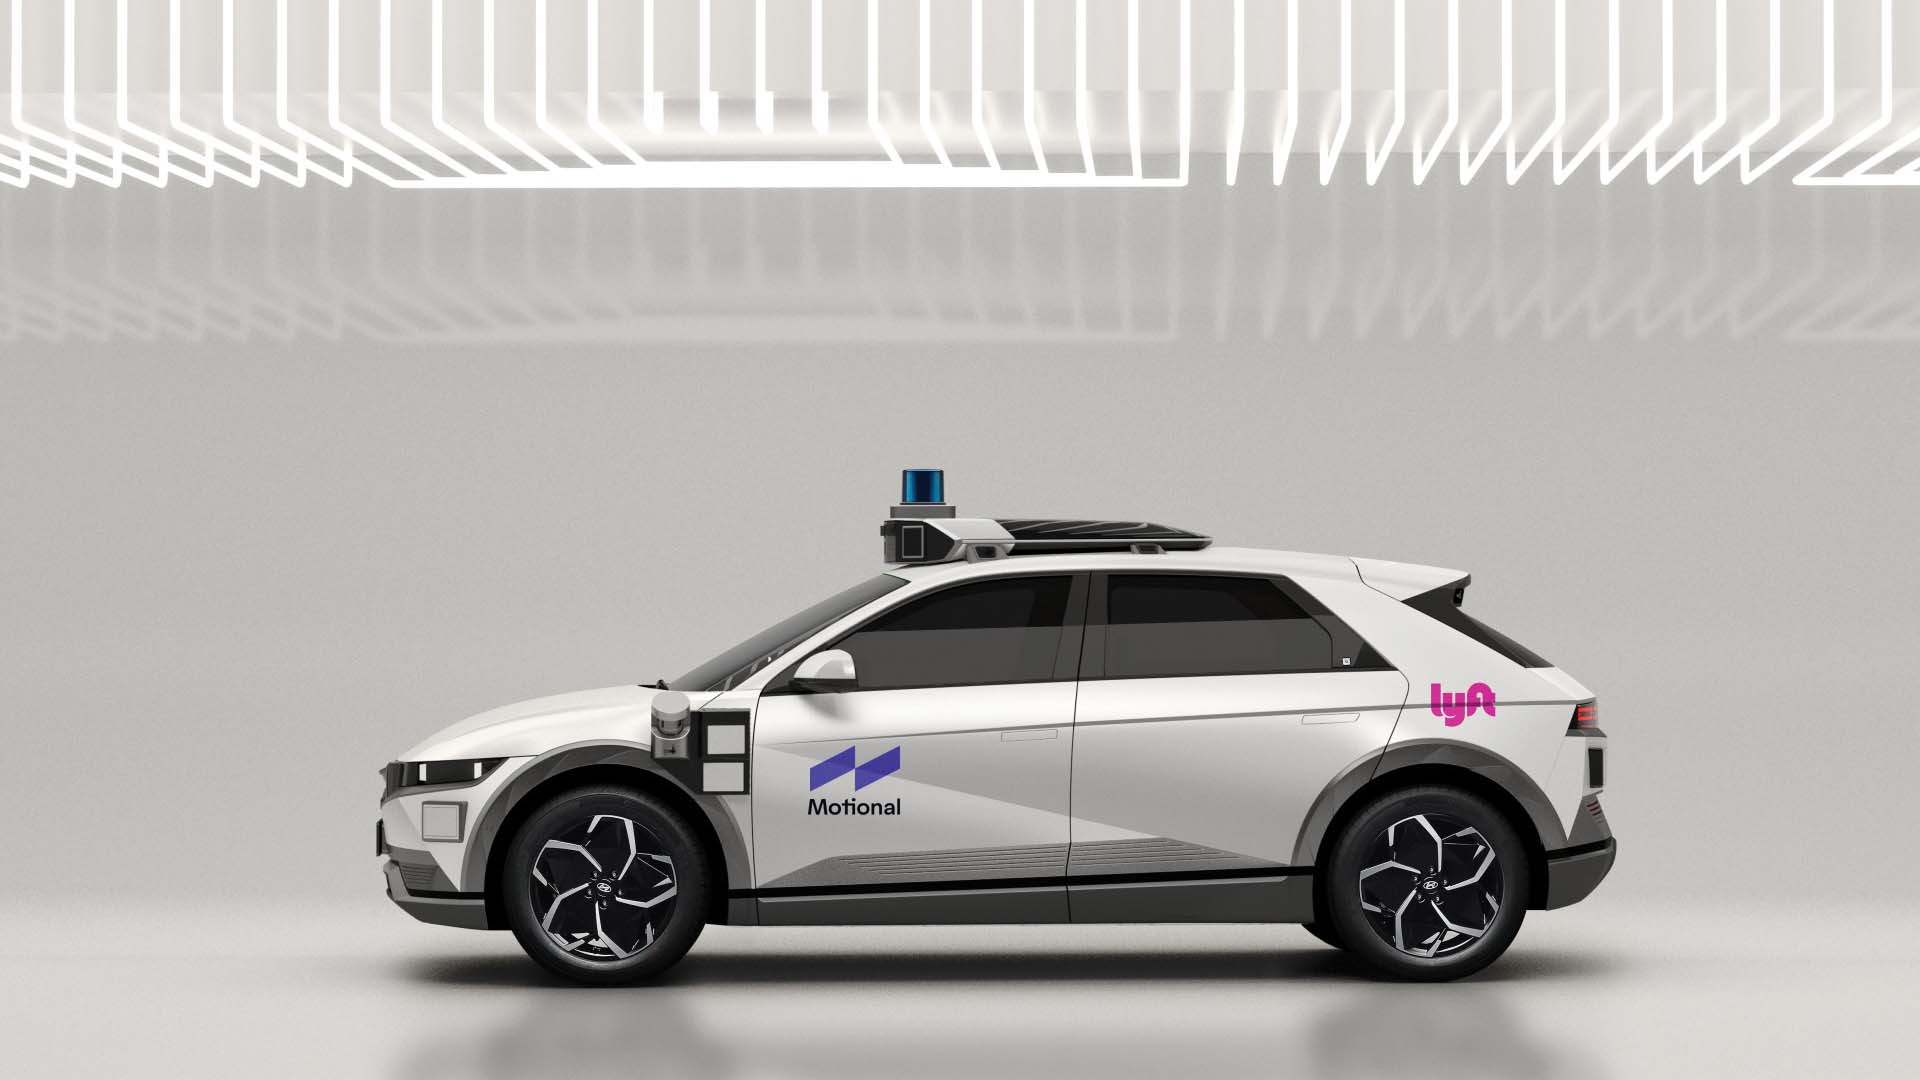 motional and lyft autonomous vehicle outlook 2022 robotaxi